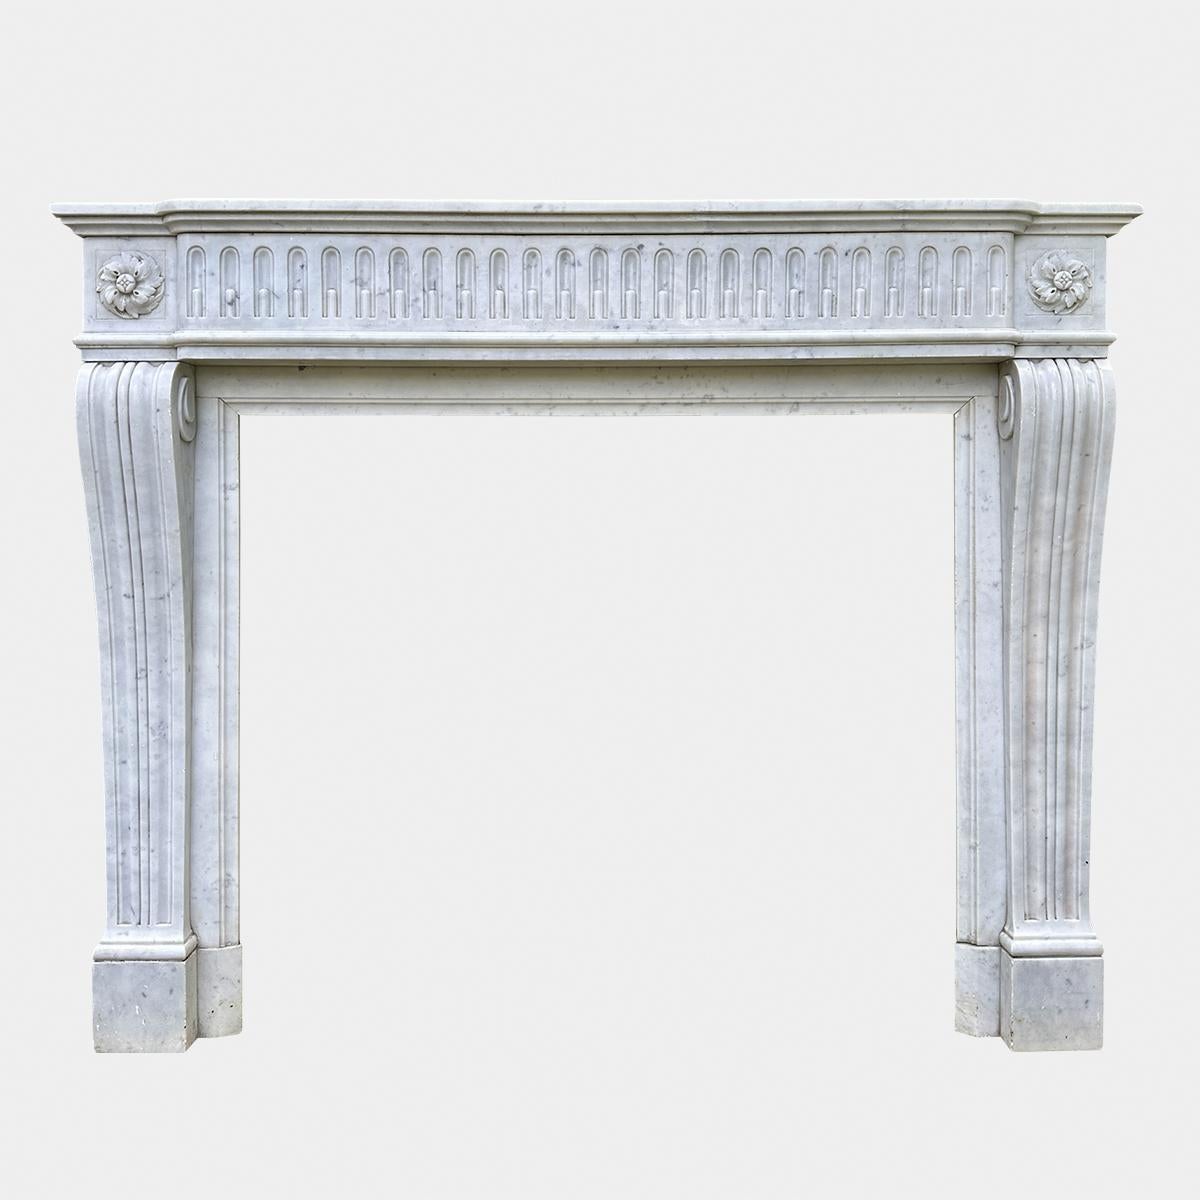 Une ancienne cheminée française de style Louis XVI en marbre italien de Carrare. Les montants de la console sont cannelés, les blocs d'angle sont sculptés de patates carrées et la frise est courbée et cannelée. L'étagère est à nouveau bordée d'un